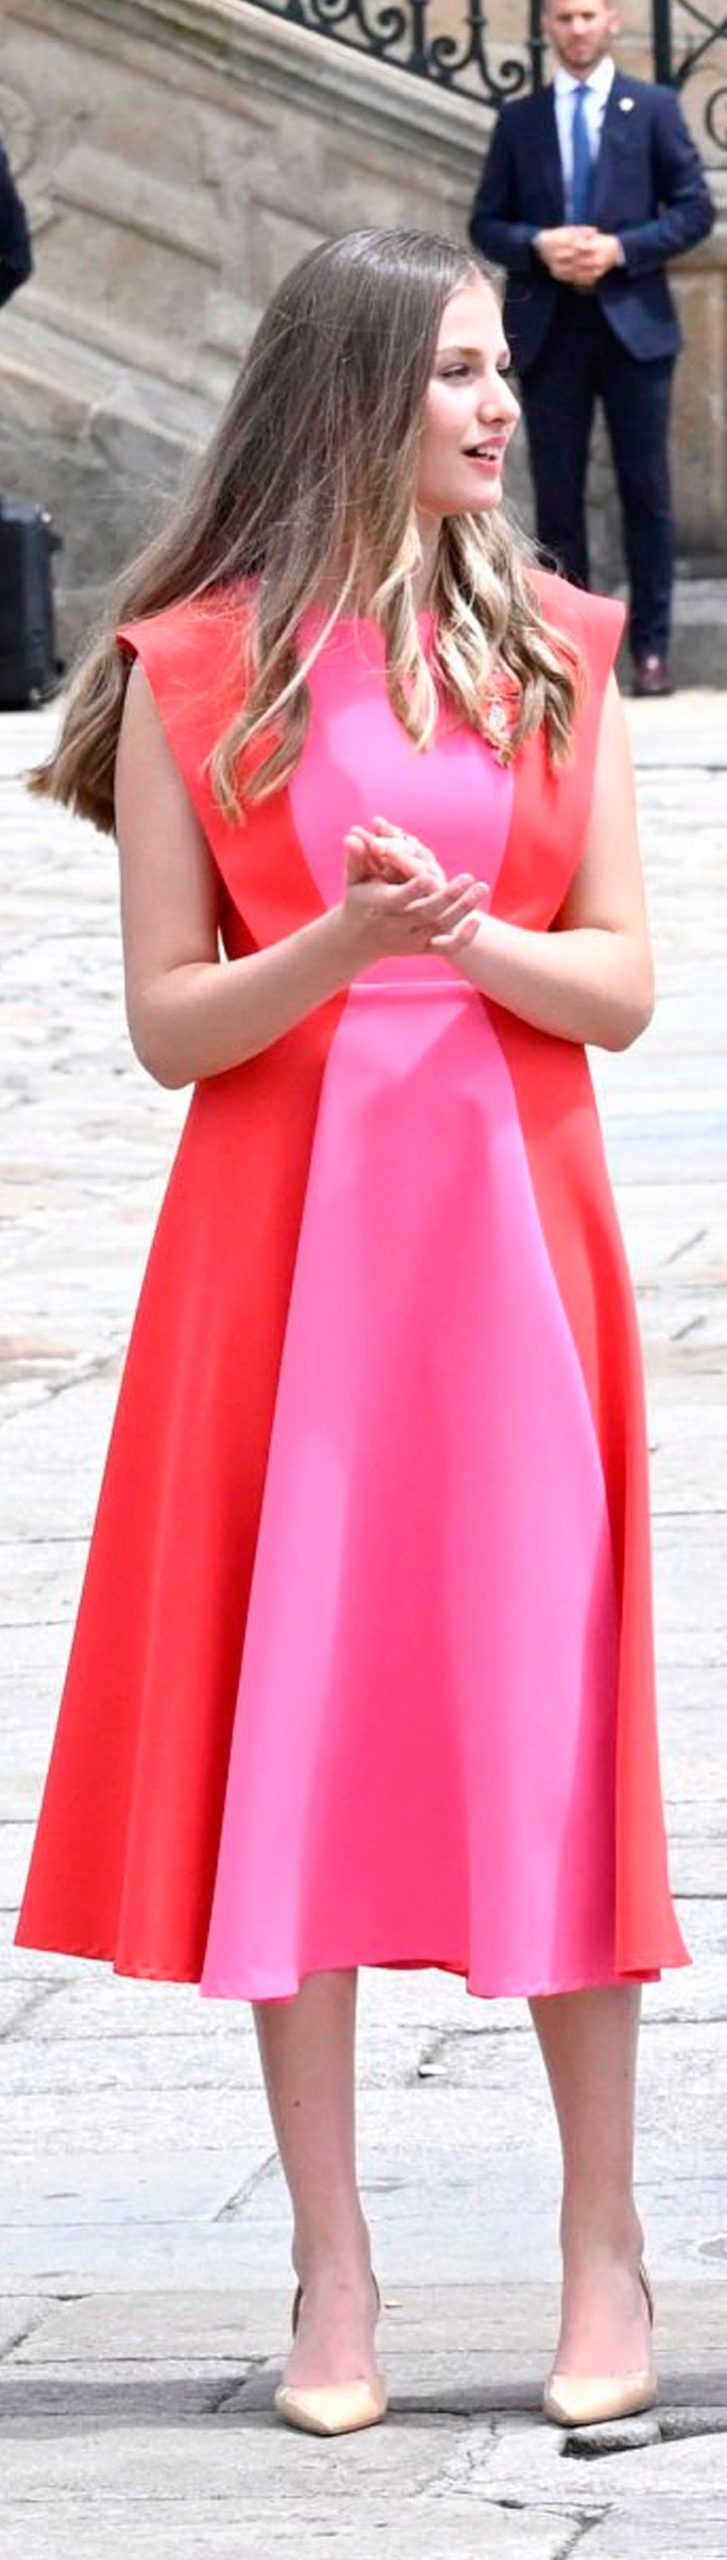 dress of Princess Leonor